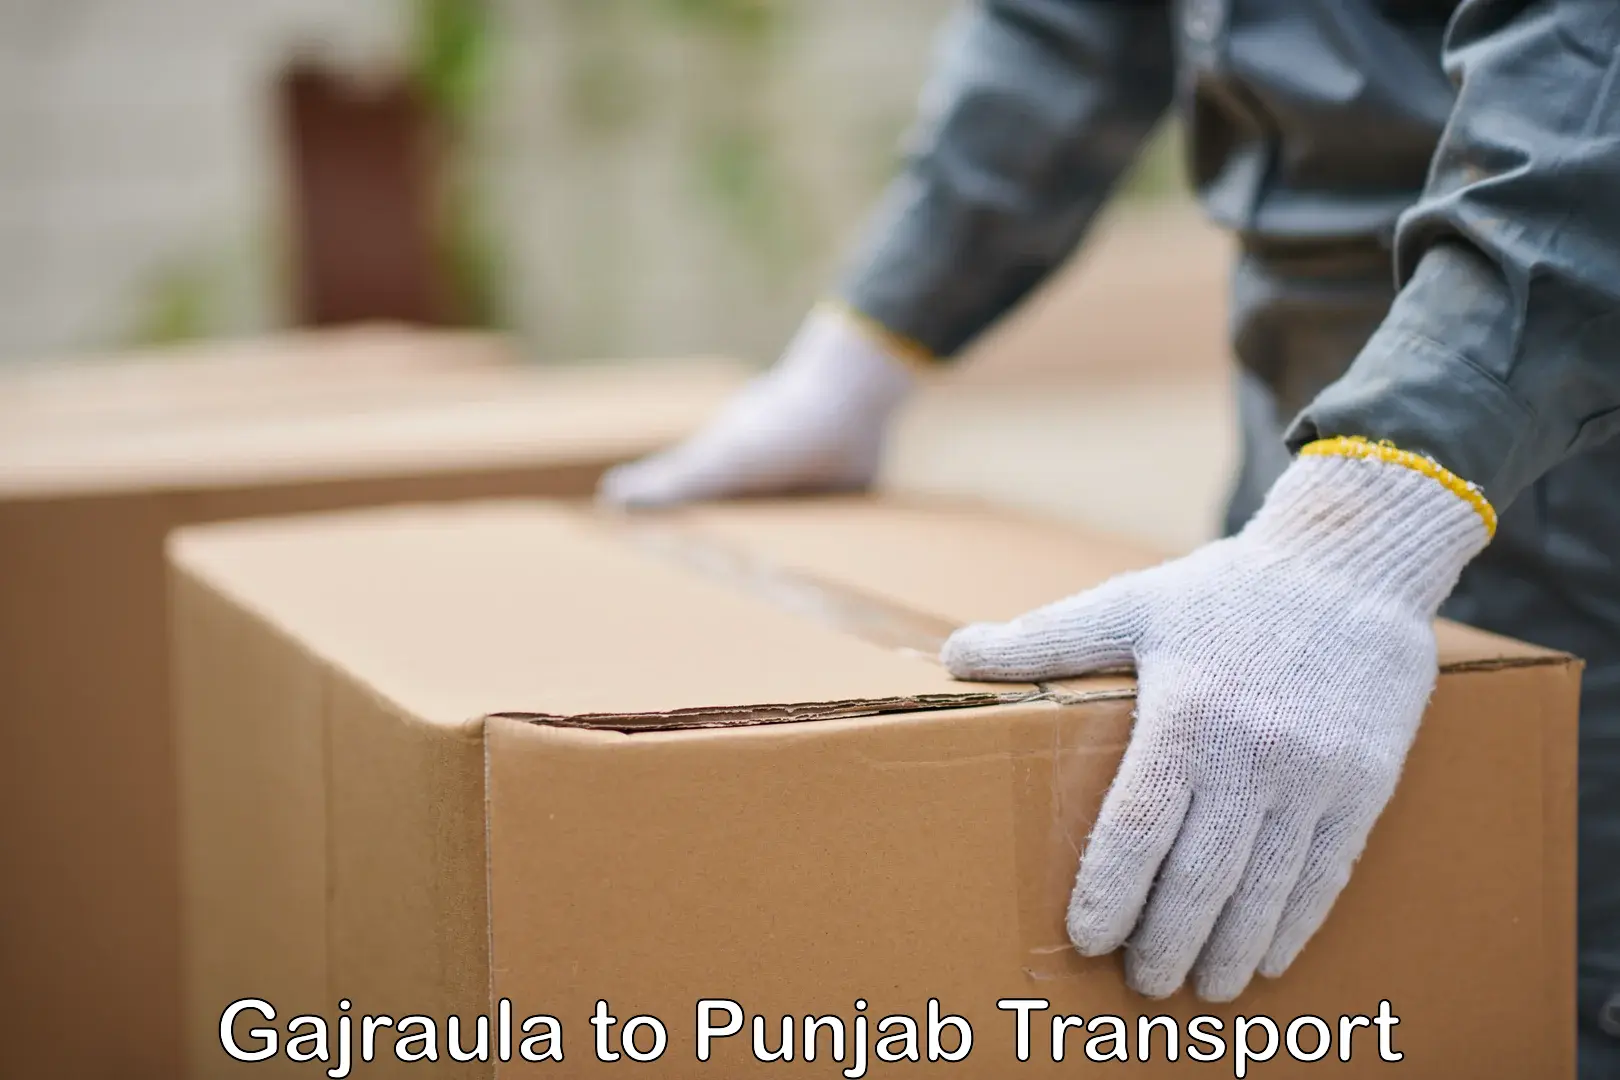 Transport in sharing Gajraula to Punjab